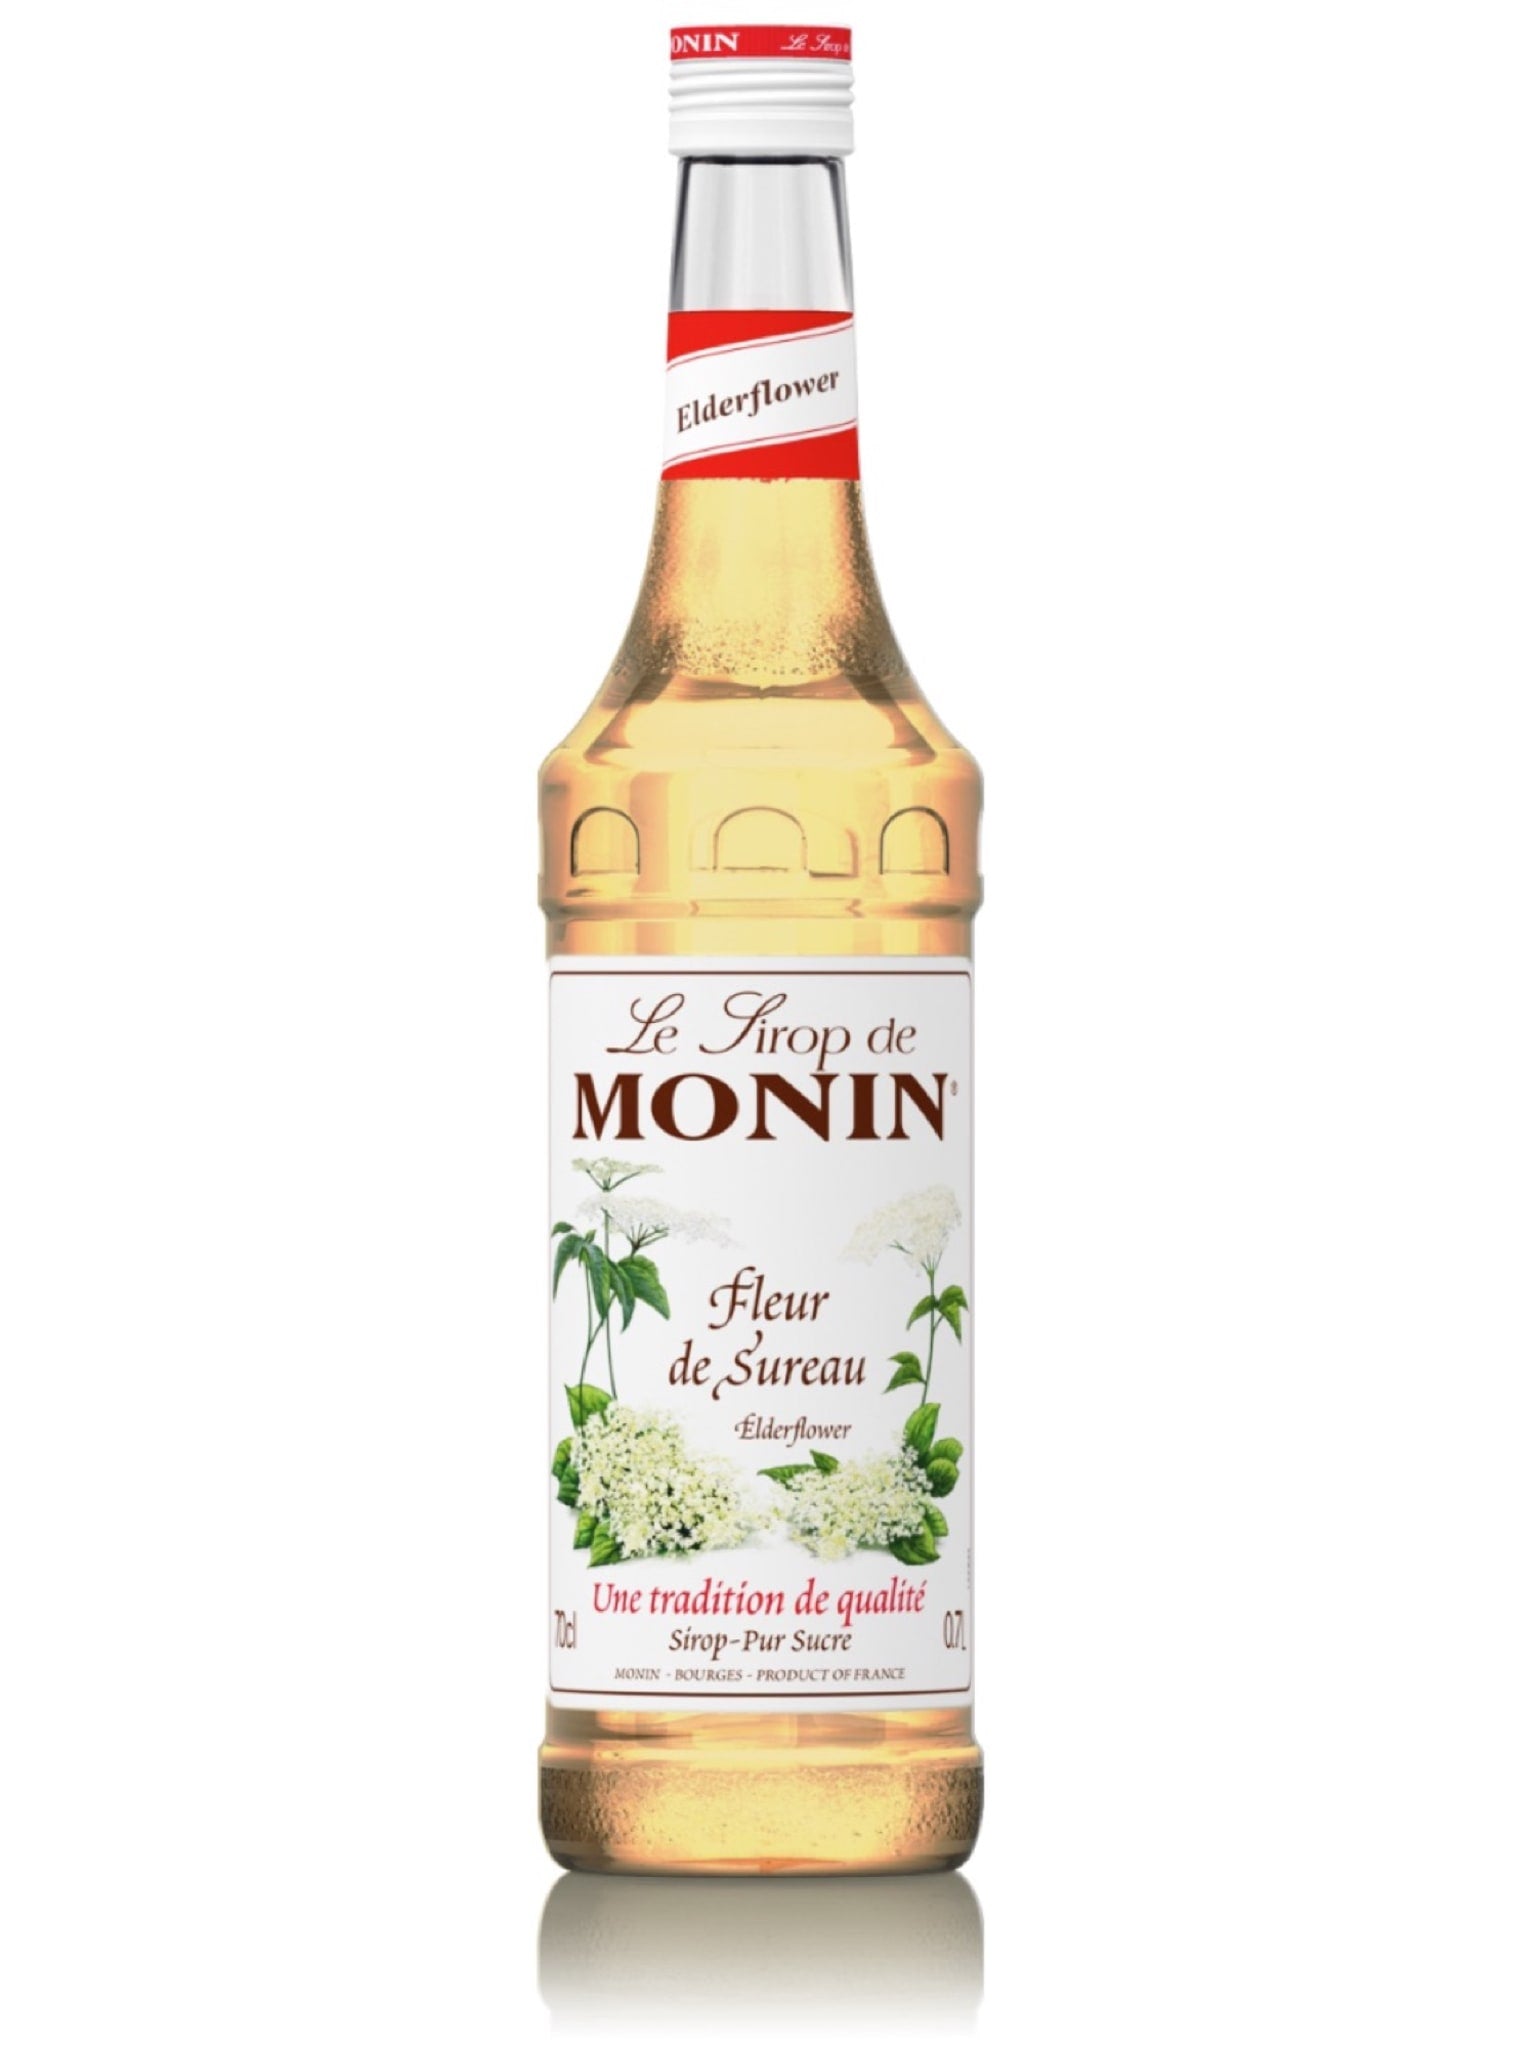 Tilføj en forfriskende og blomstrende smag til dine drinks med Monin Hyldeblomst Sirup